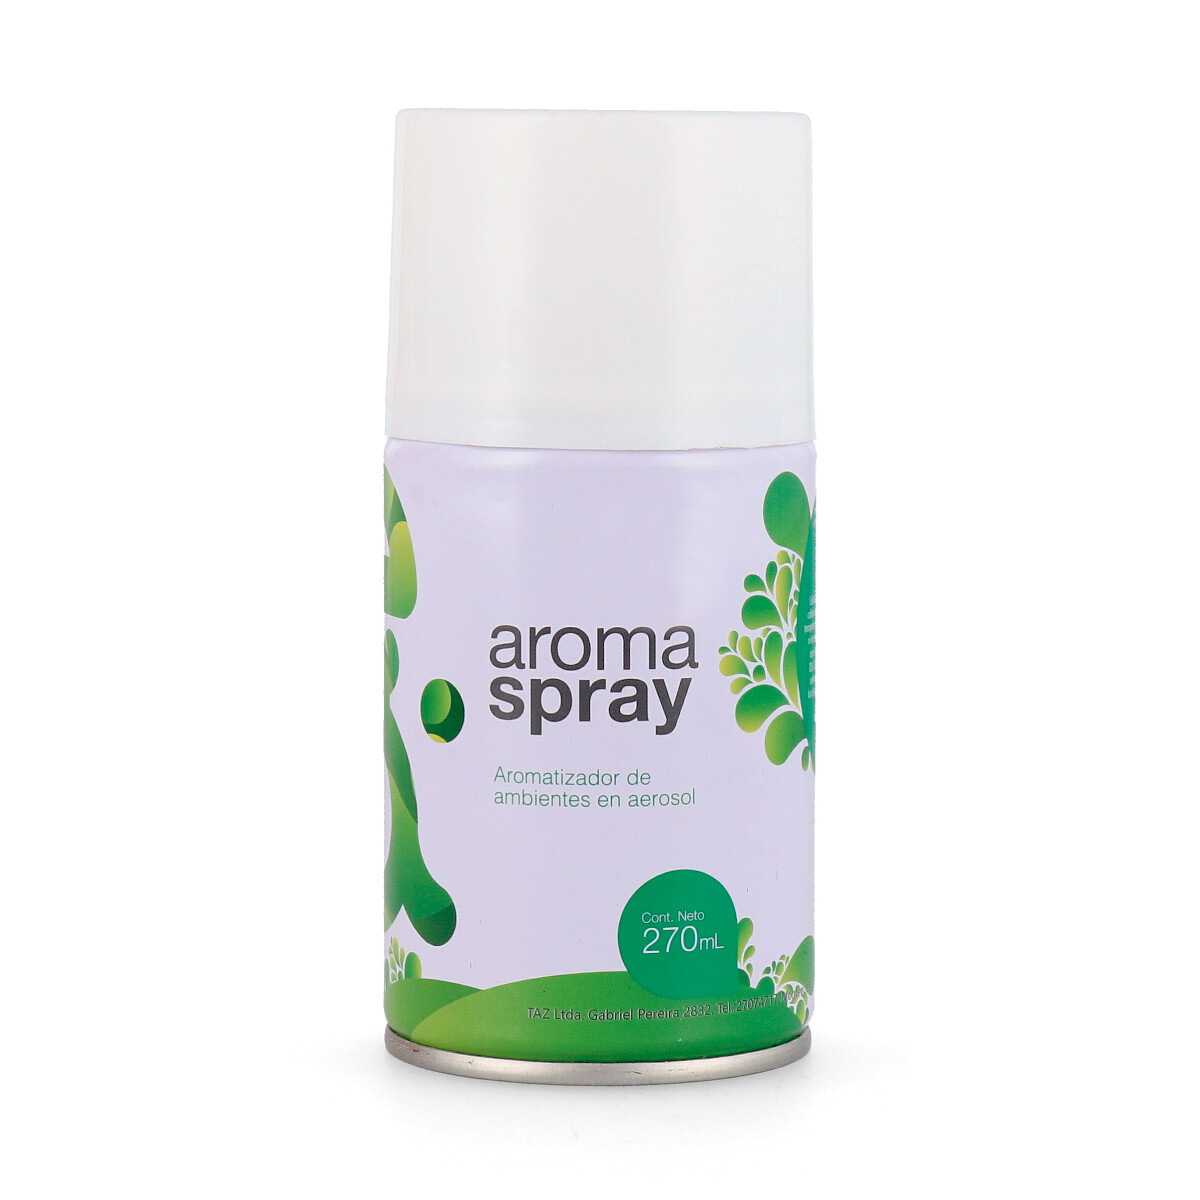 Aroma Spray - Ck One 